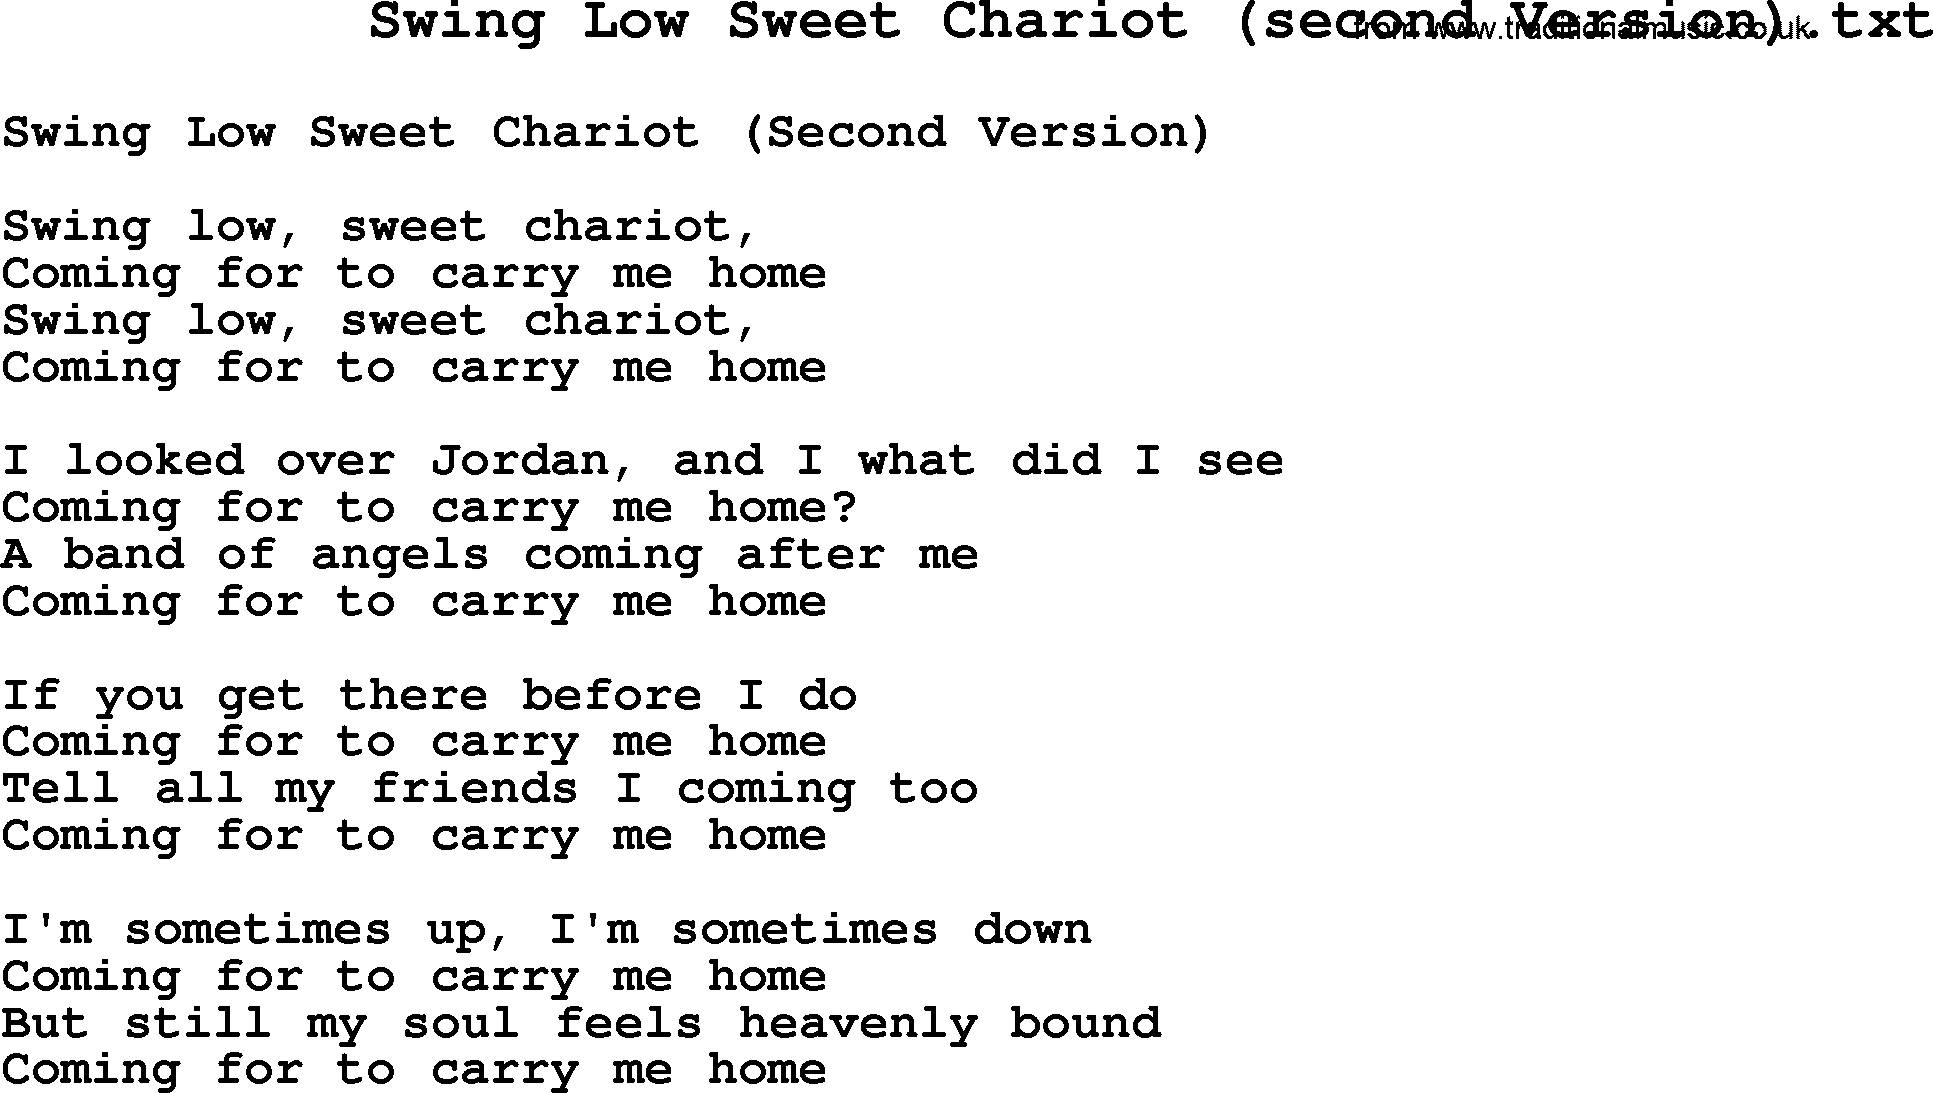 Negro Spiritual Song Lyrics for Swing Low Sweet Chariot(2)